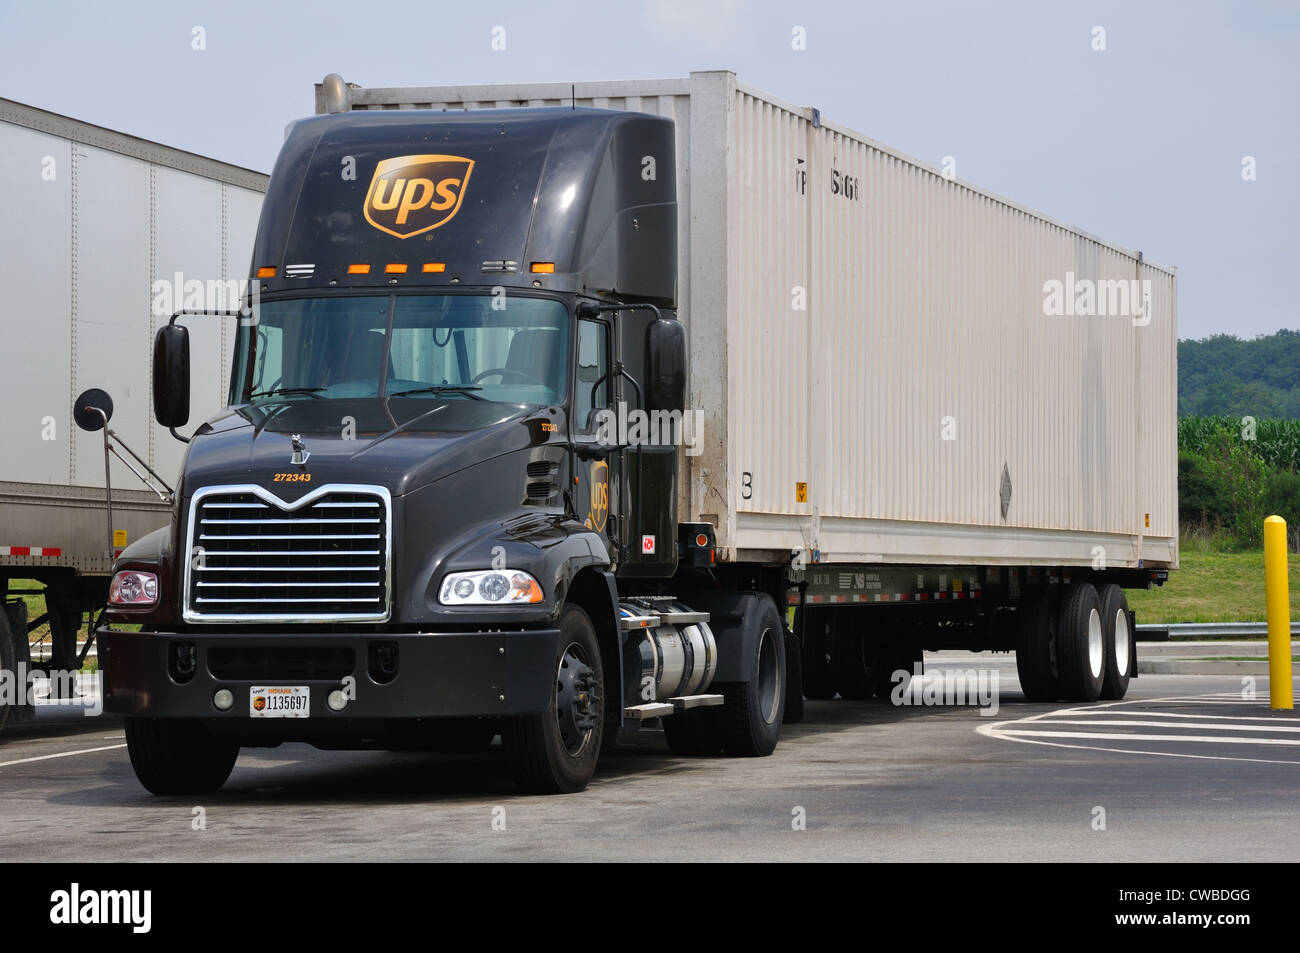 Camion dell'UPS, Stati Uniti d'America Foto Stock